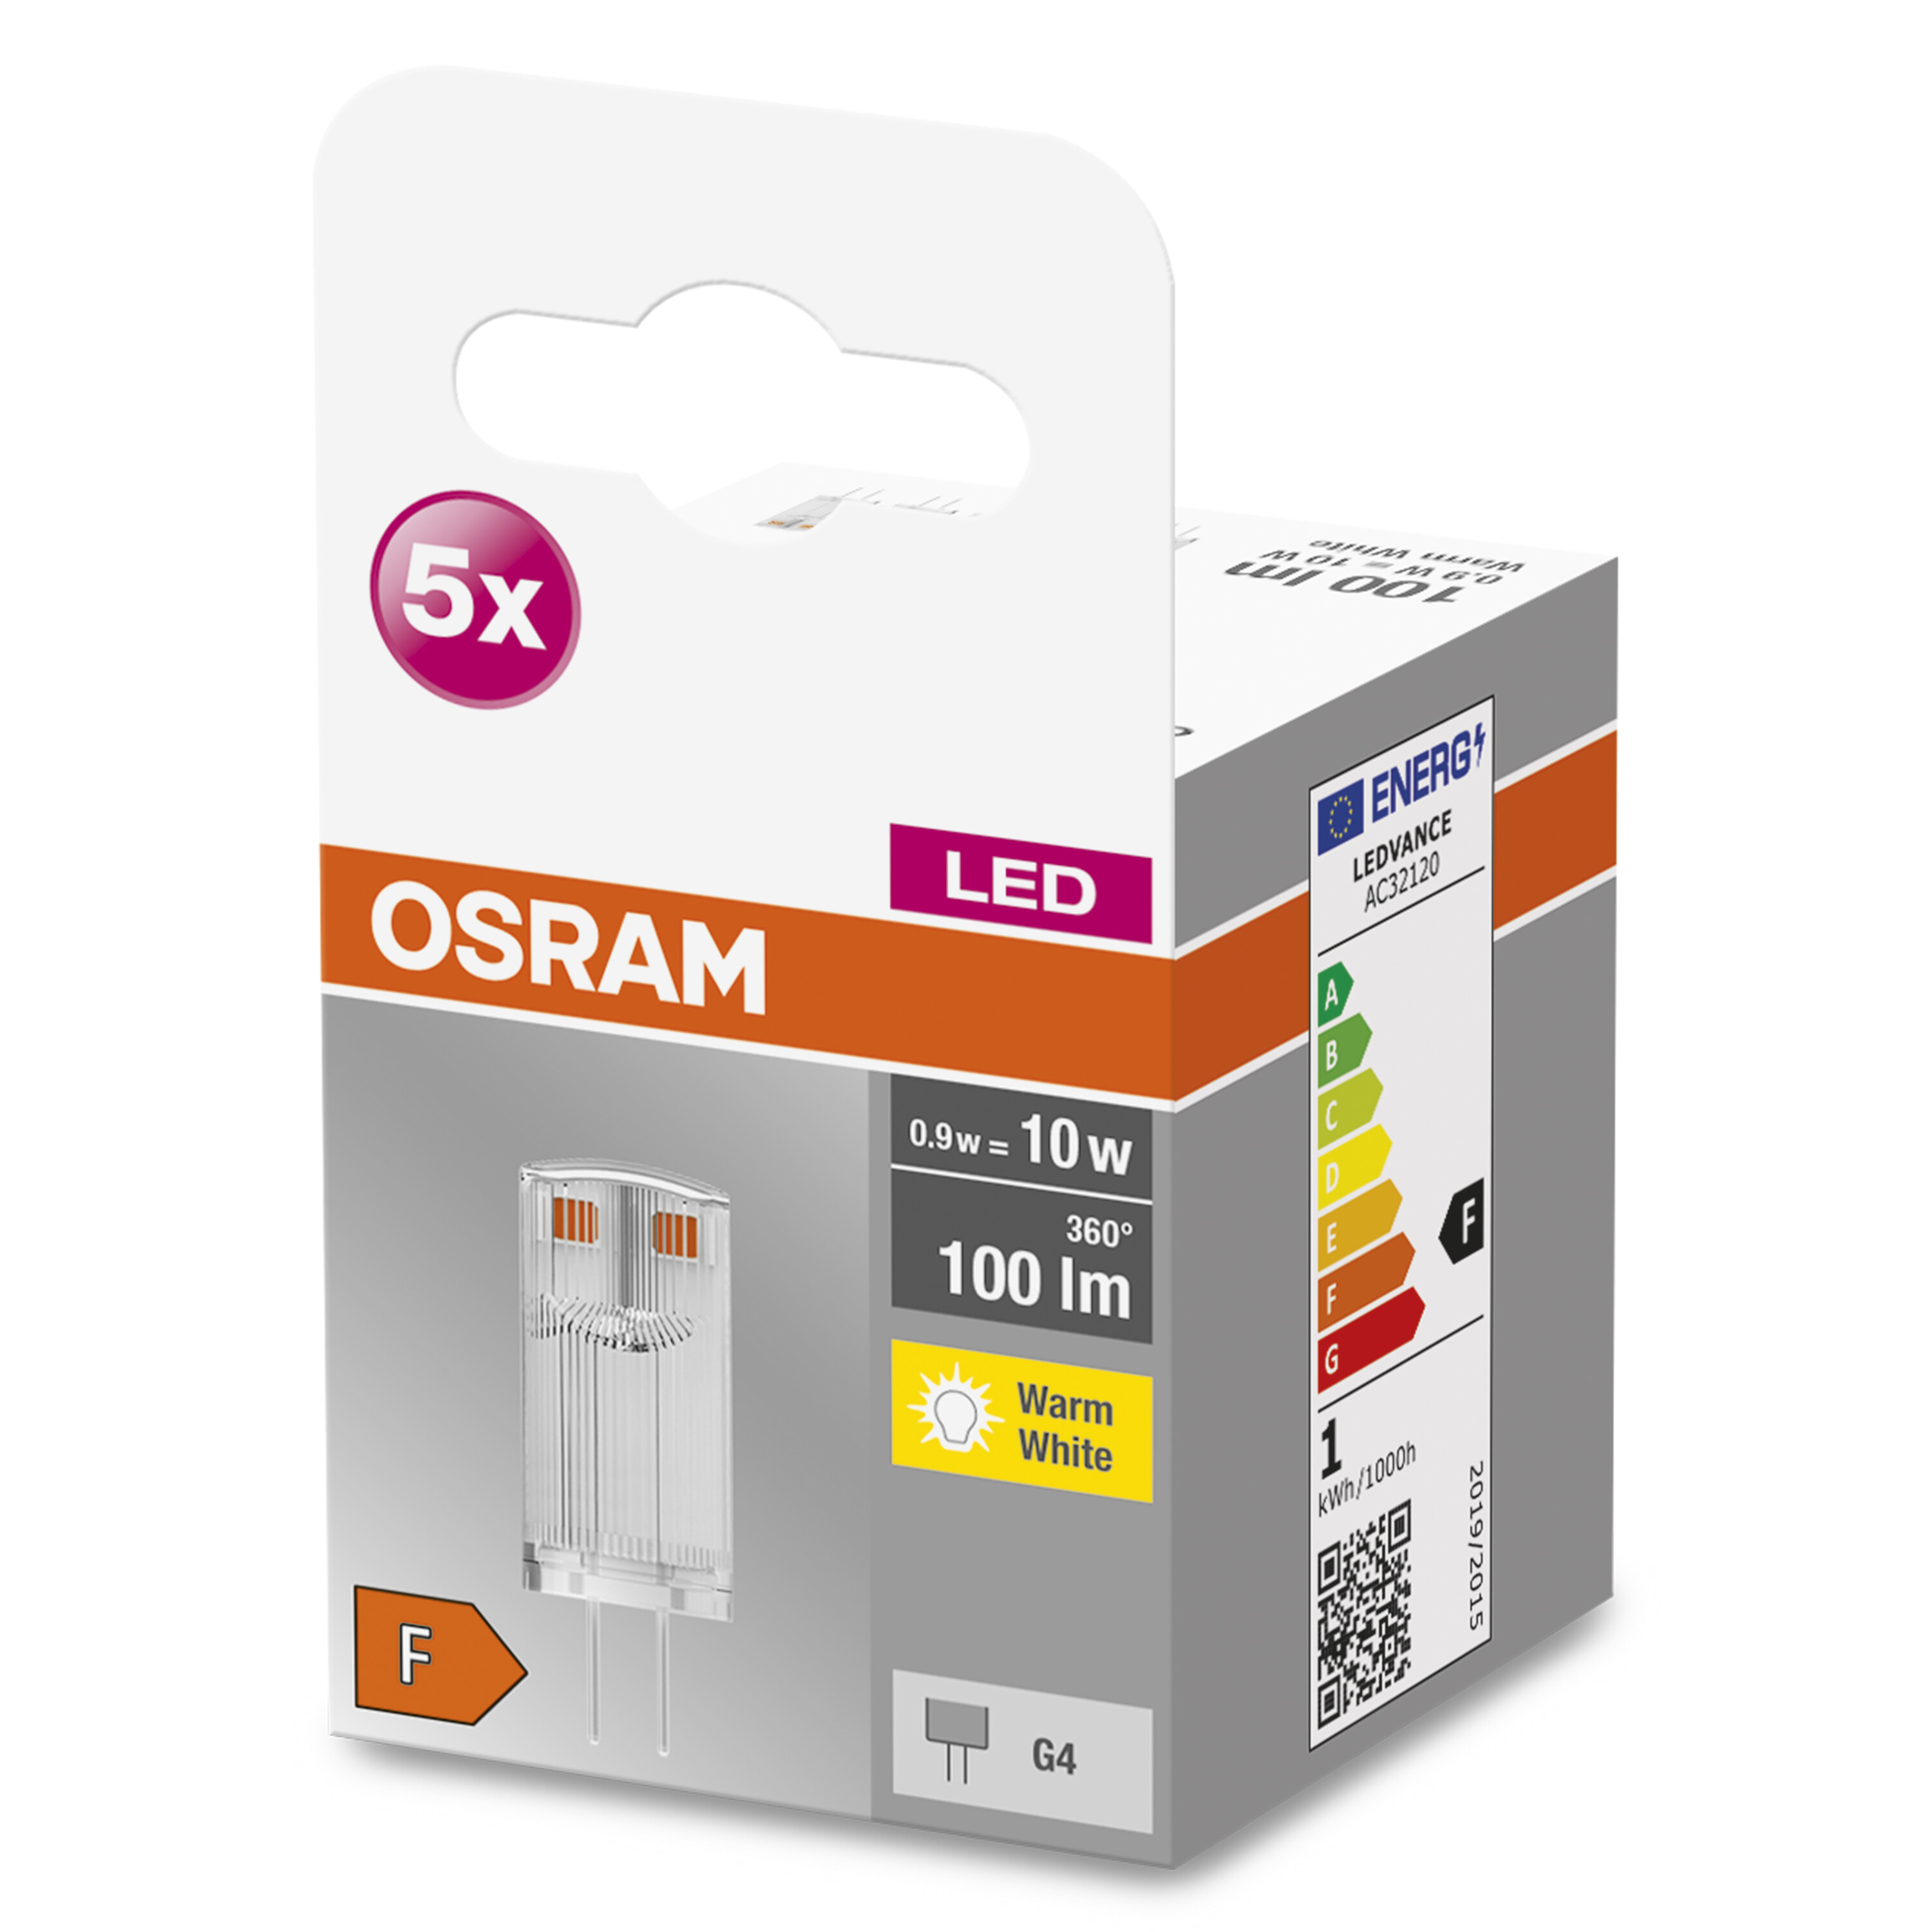 OSRAM  LED BASE LED V 12 Warmweiß PIN G4 Lampe Lumen 100